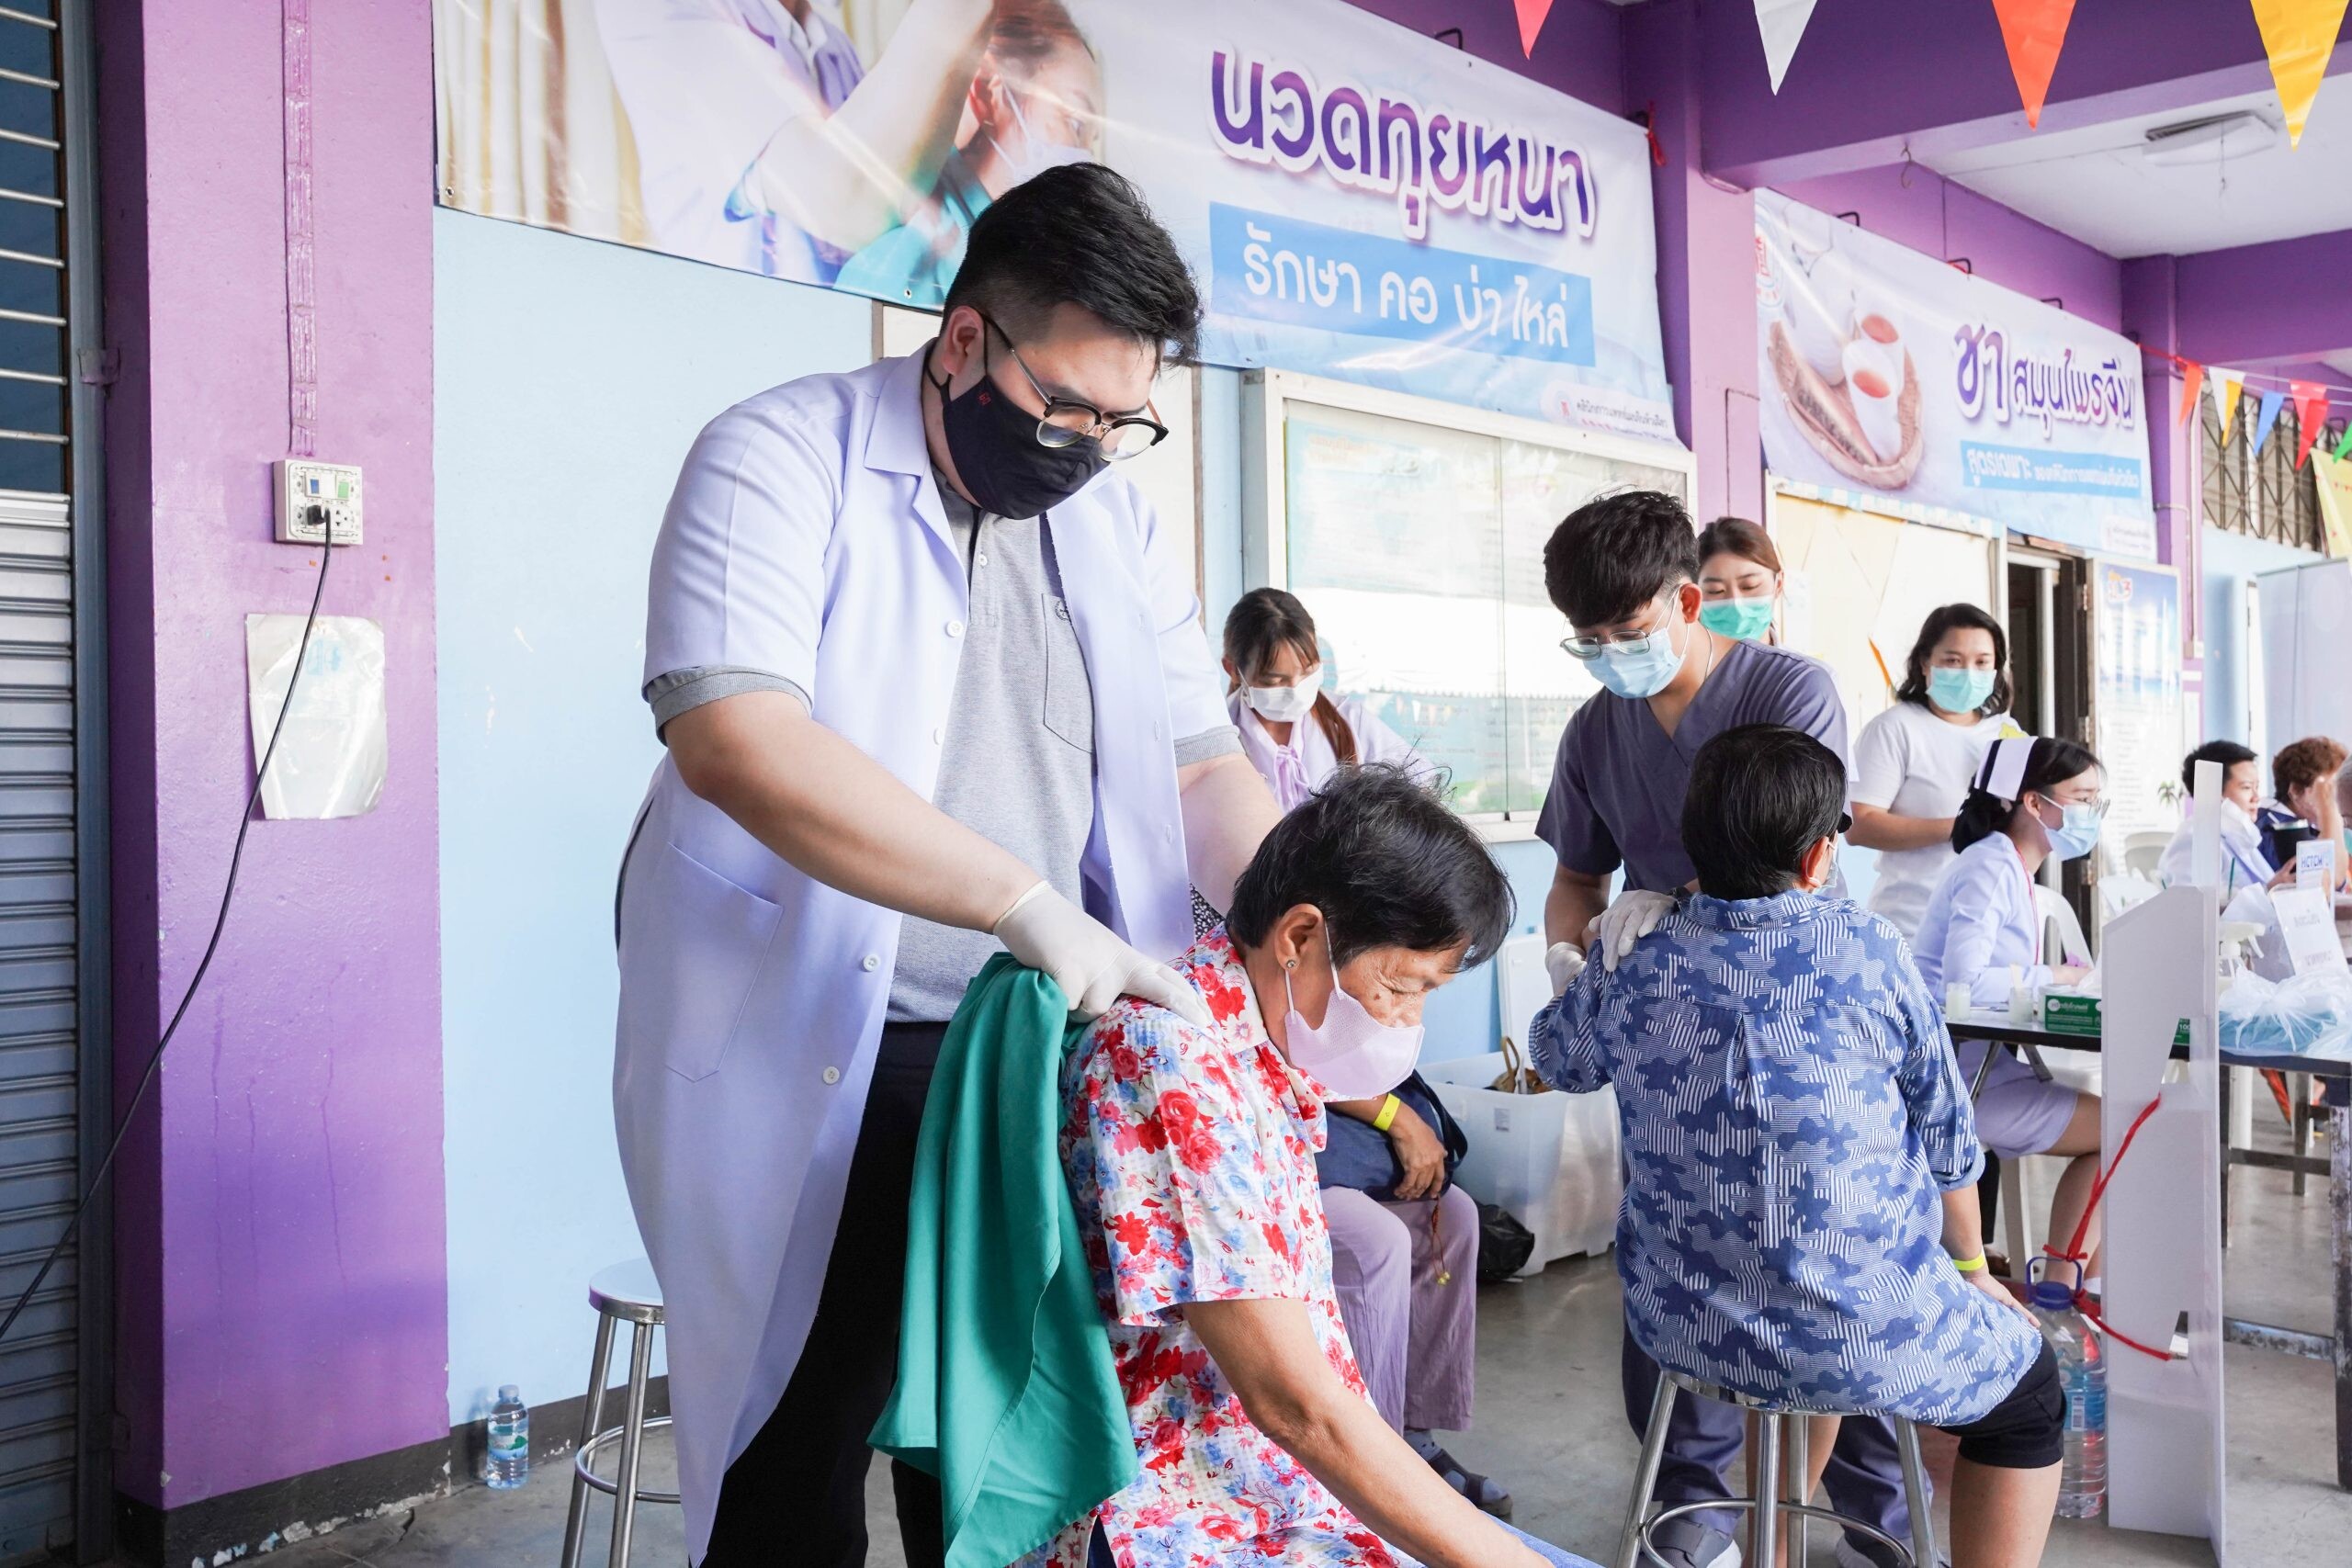 คลินิกการแพทย์แผนจีนหัวเฉียว ร่วมงาน คาราวานป่อเต็กตึ๊ง ปันความสุข ให้ชุมชน ครั้งที่ 2